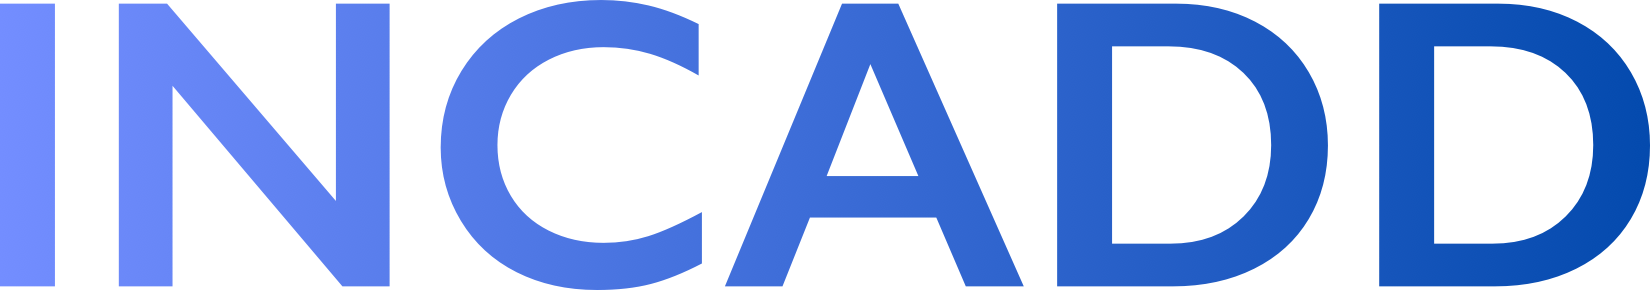 incadd logo